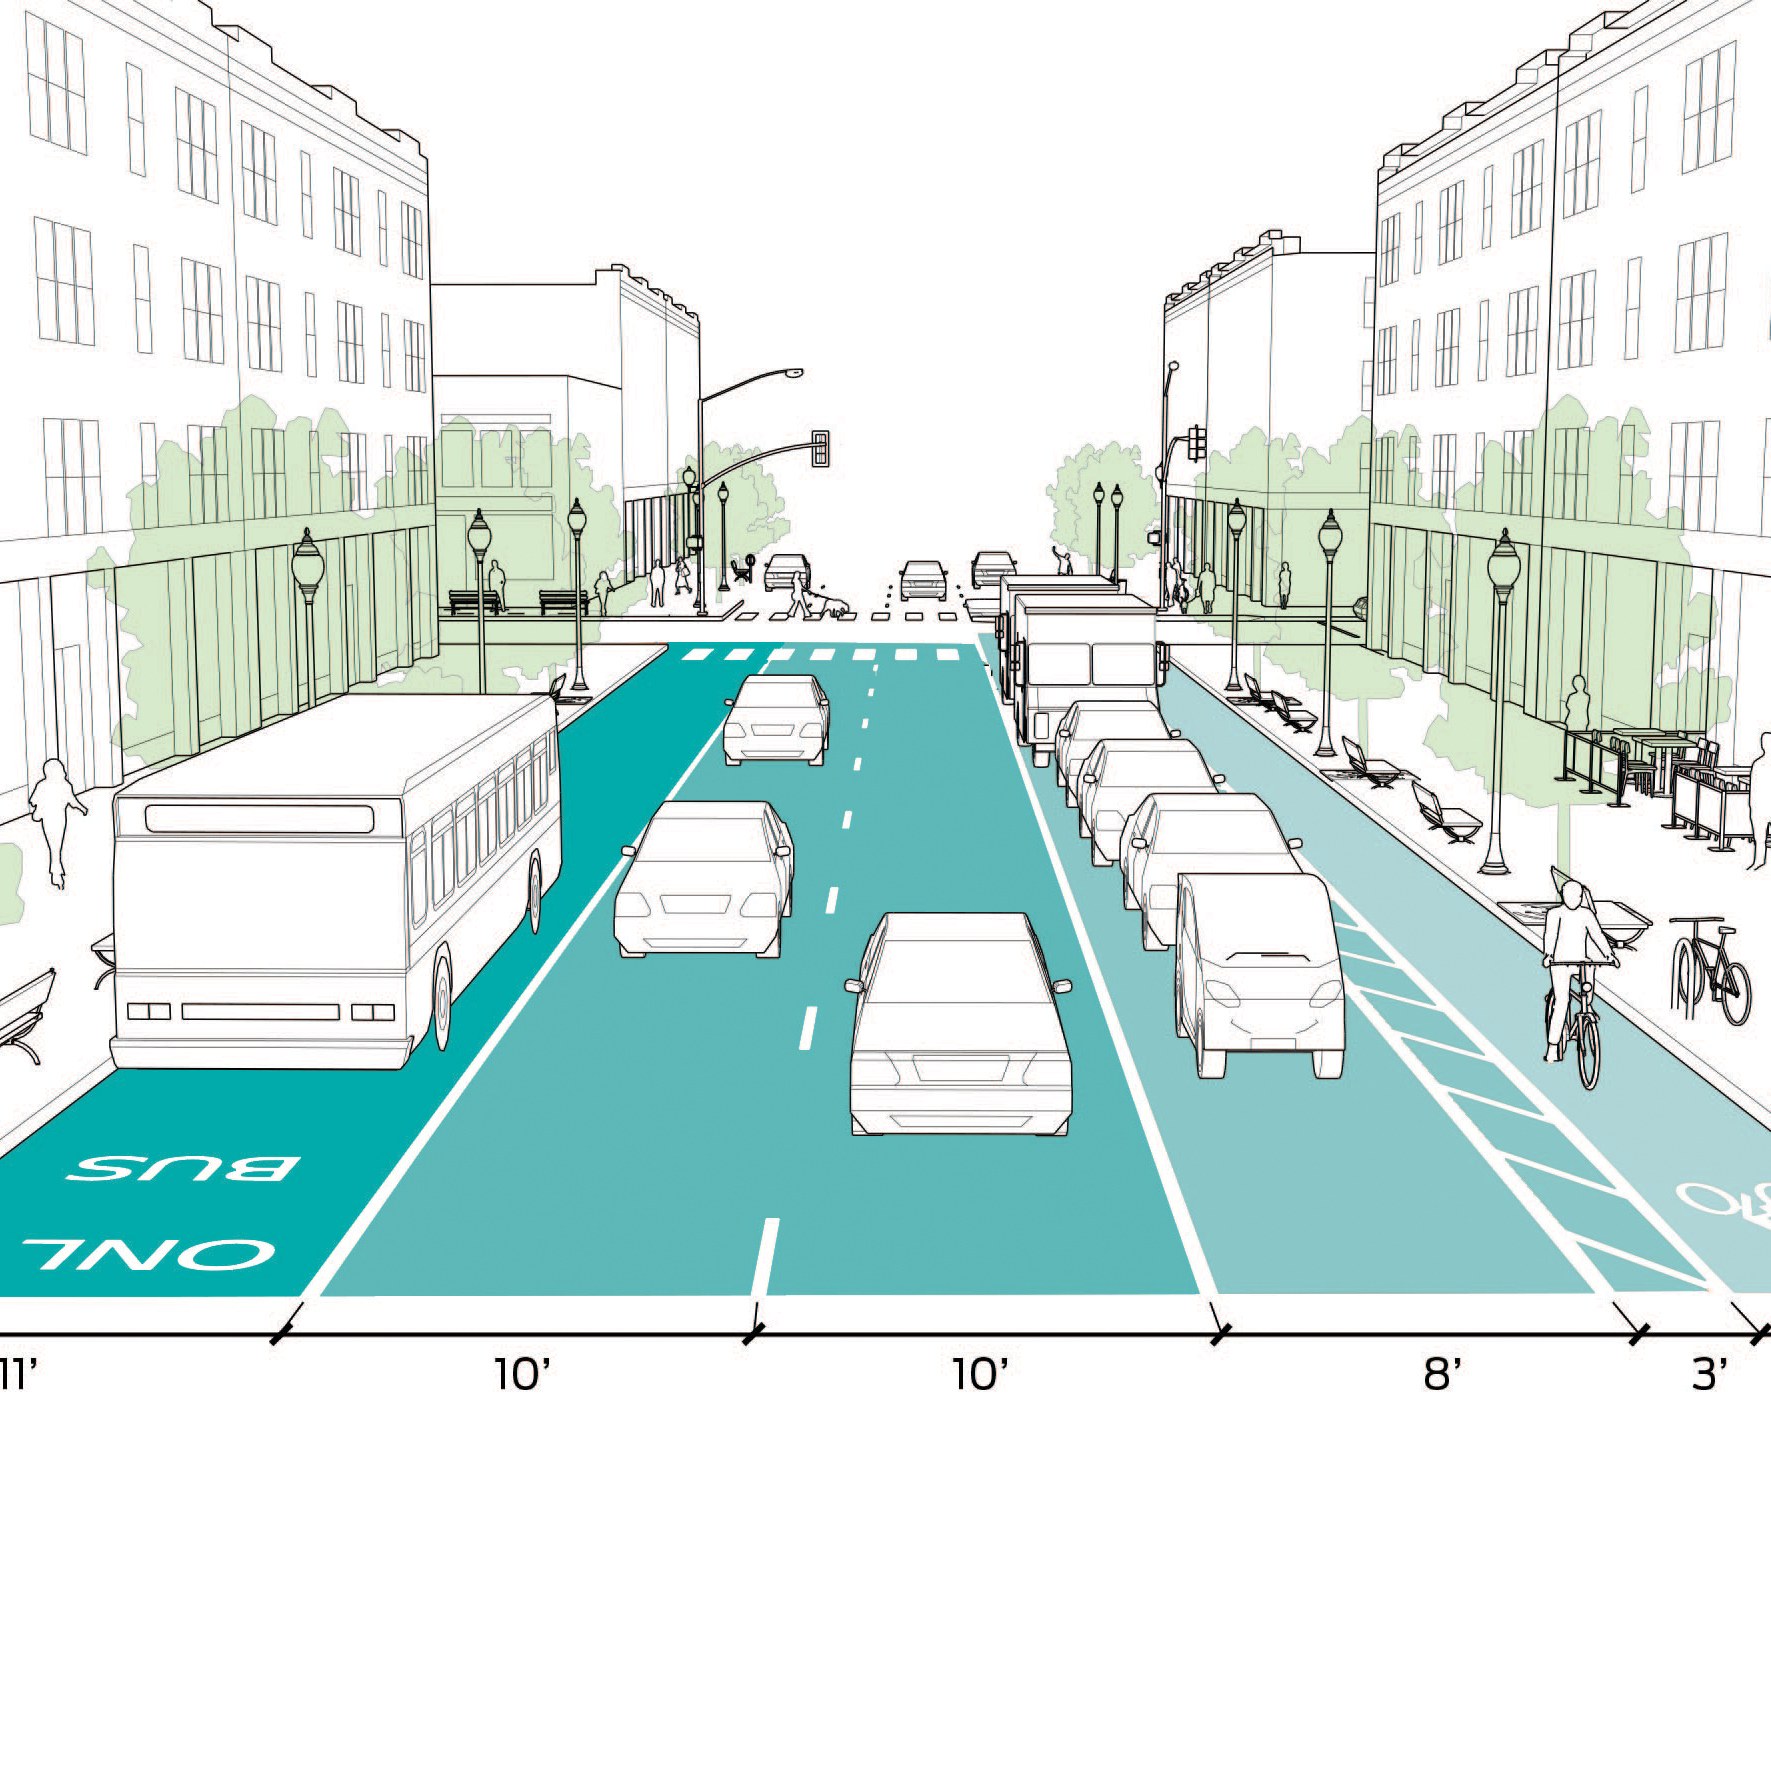 Тротуар в жилой зоне. Проектирование велосипедных дорожек. Проектирование пешеходных дорожек. Профиль улицы. Проектирование тротуаров и пешеходных дорожек.